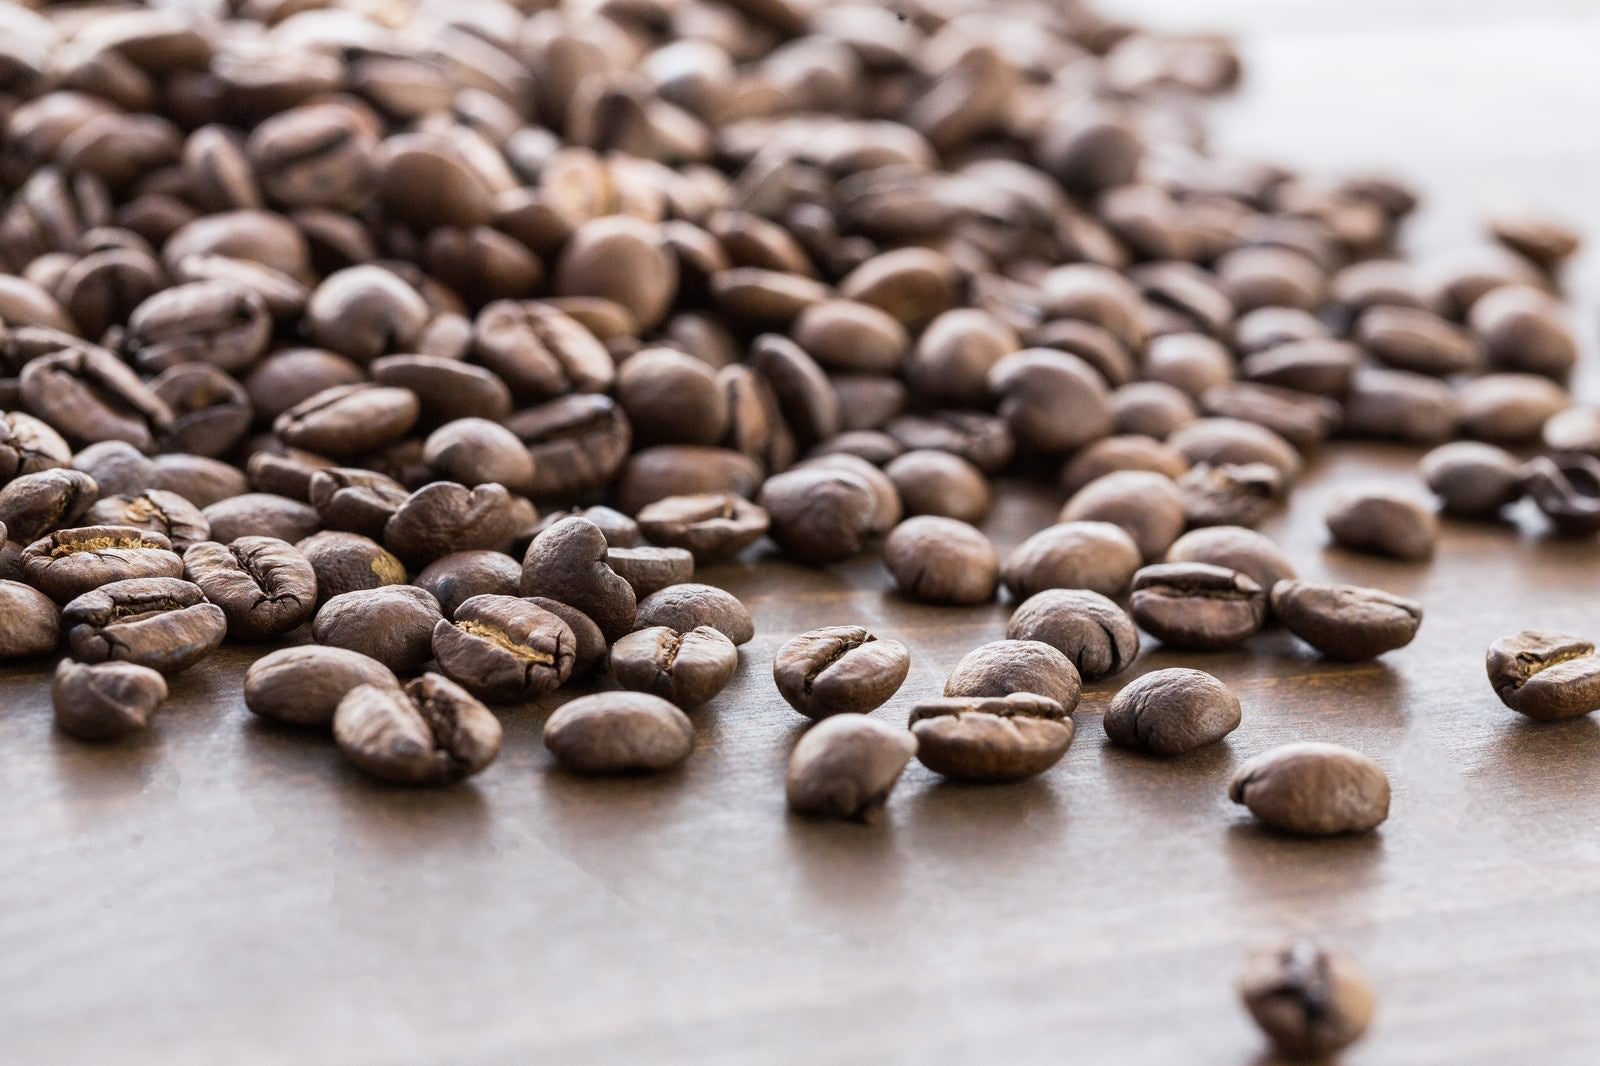 「散らばったコーヒー豆」の写真